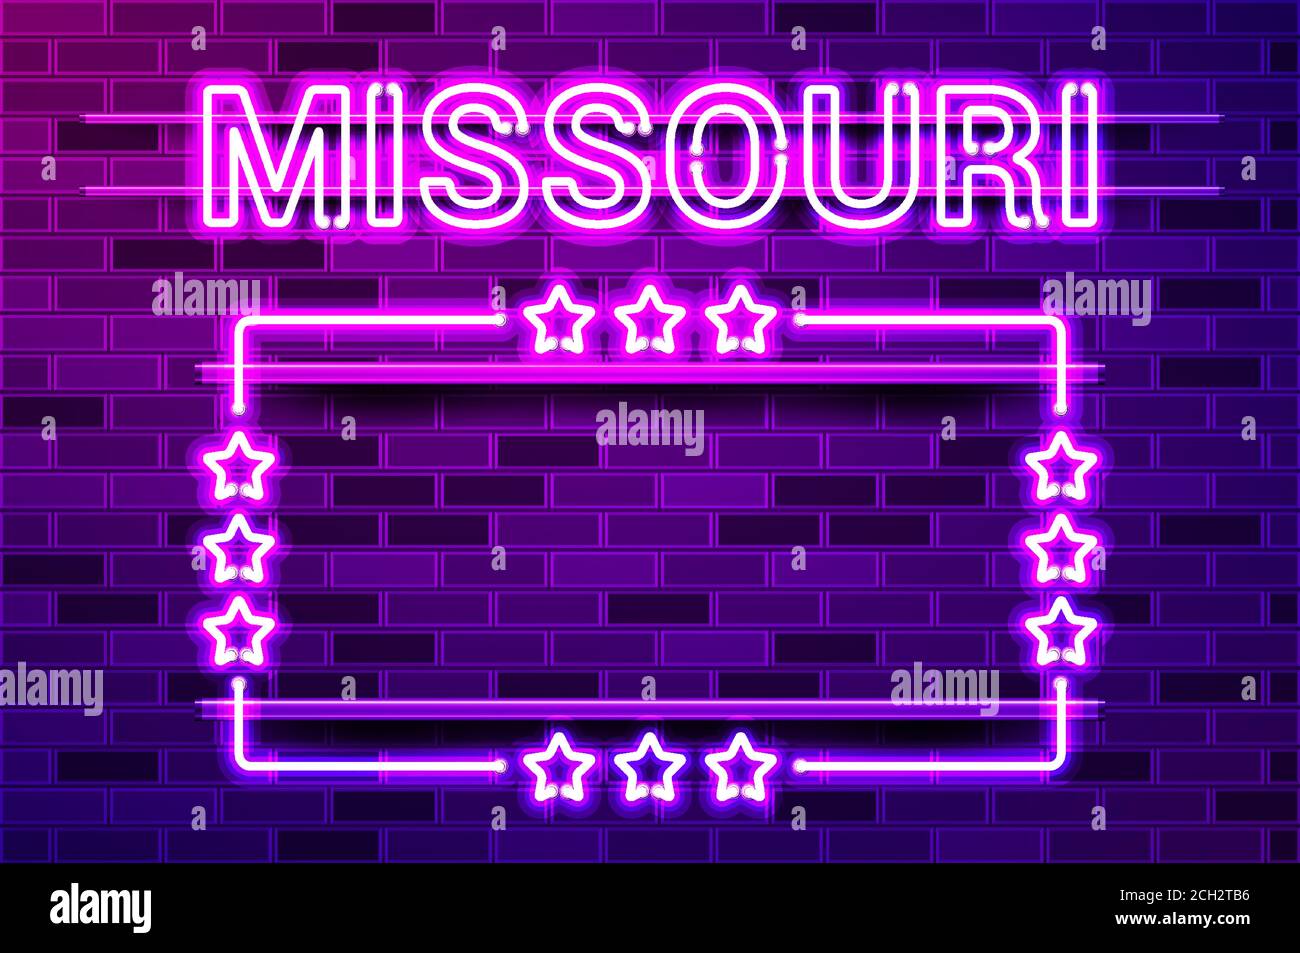 Missouri US State leuchtend lila Neon Schriftzug und ein rechteckiger Rahmen mit Sternen. Realistische Vektordarstellung. Violette Ziegelwand, violette Glut, erfüllt Stock Vektor